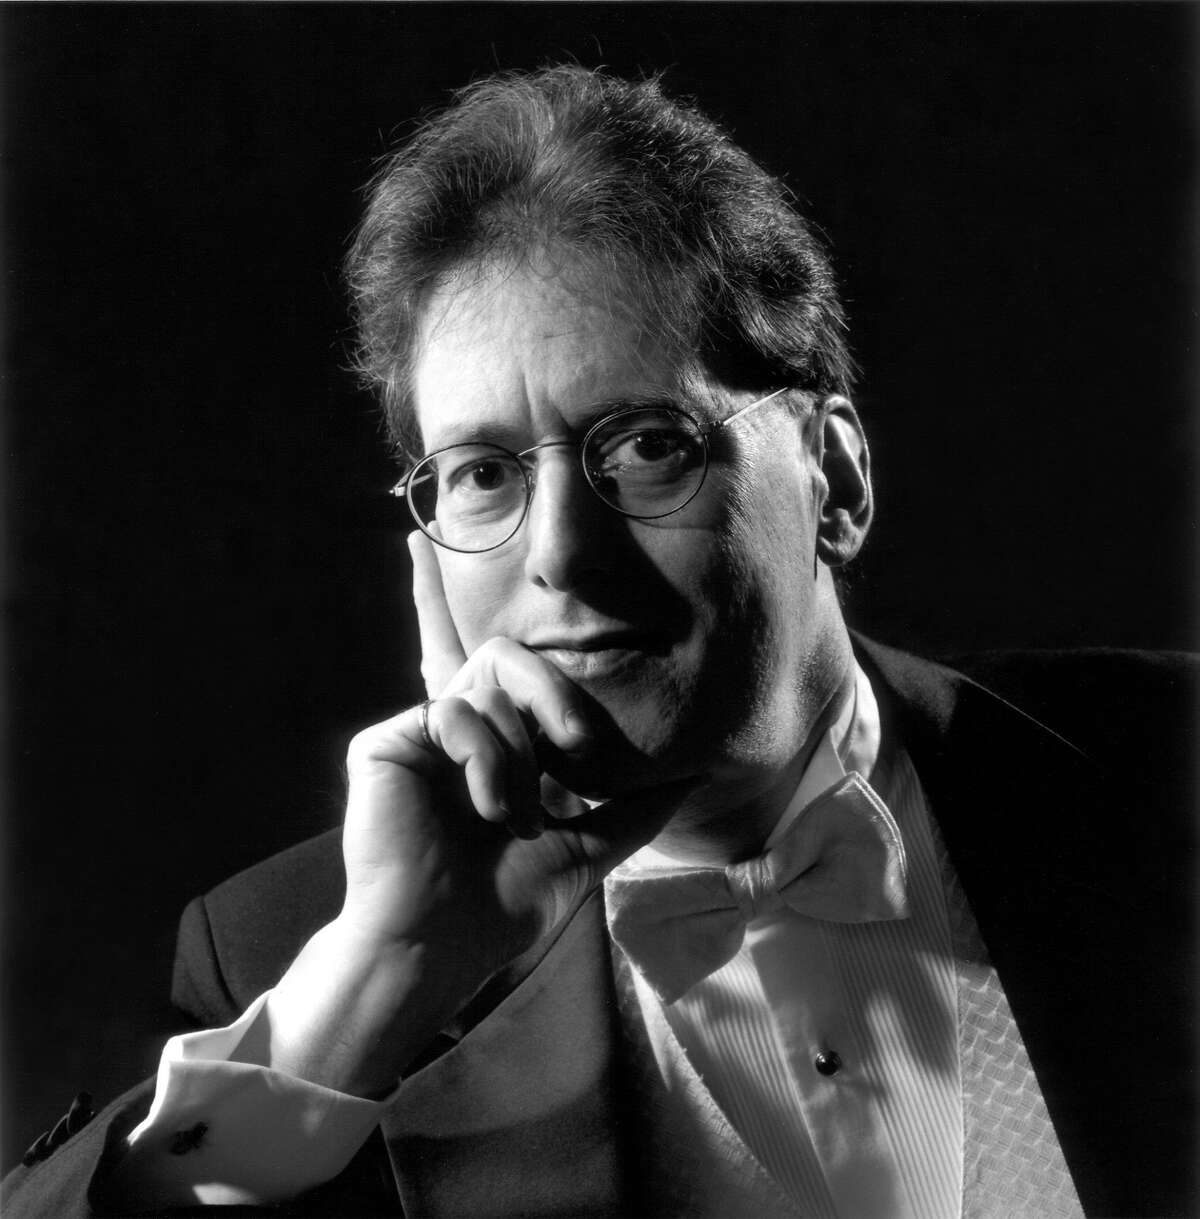 Pianist Robert Levin